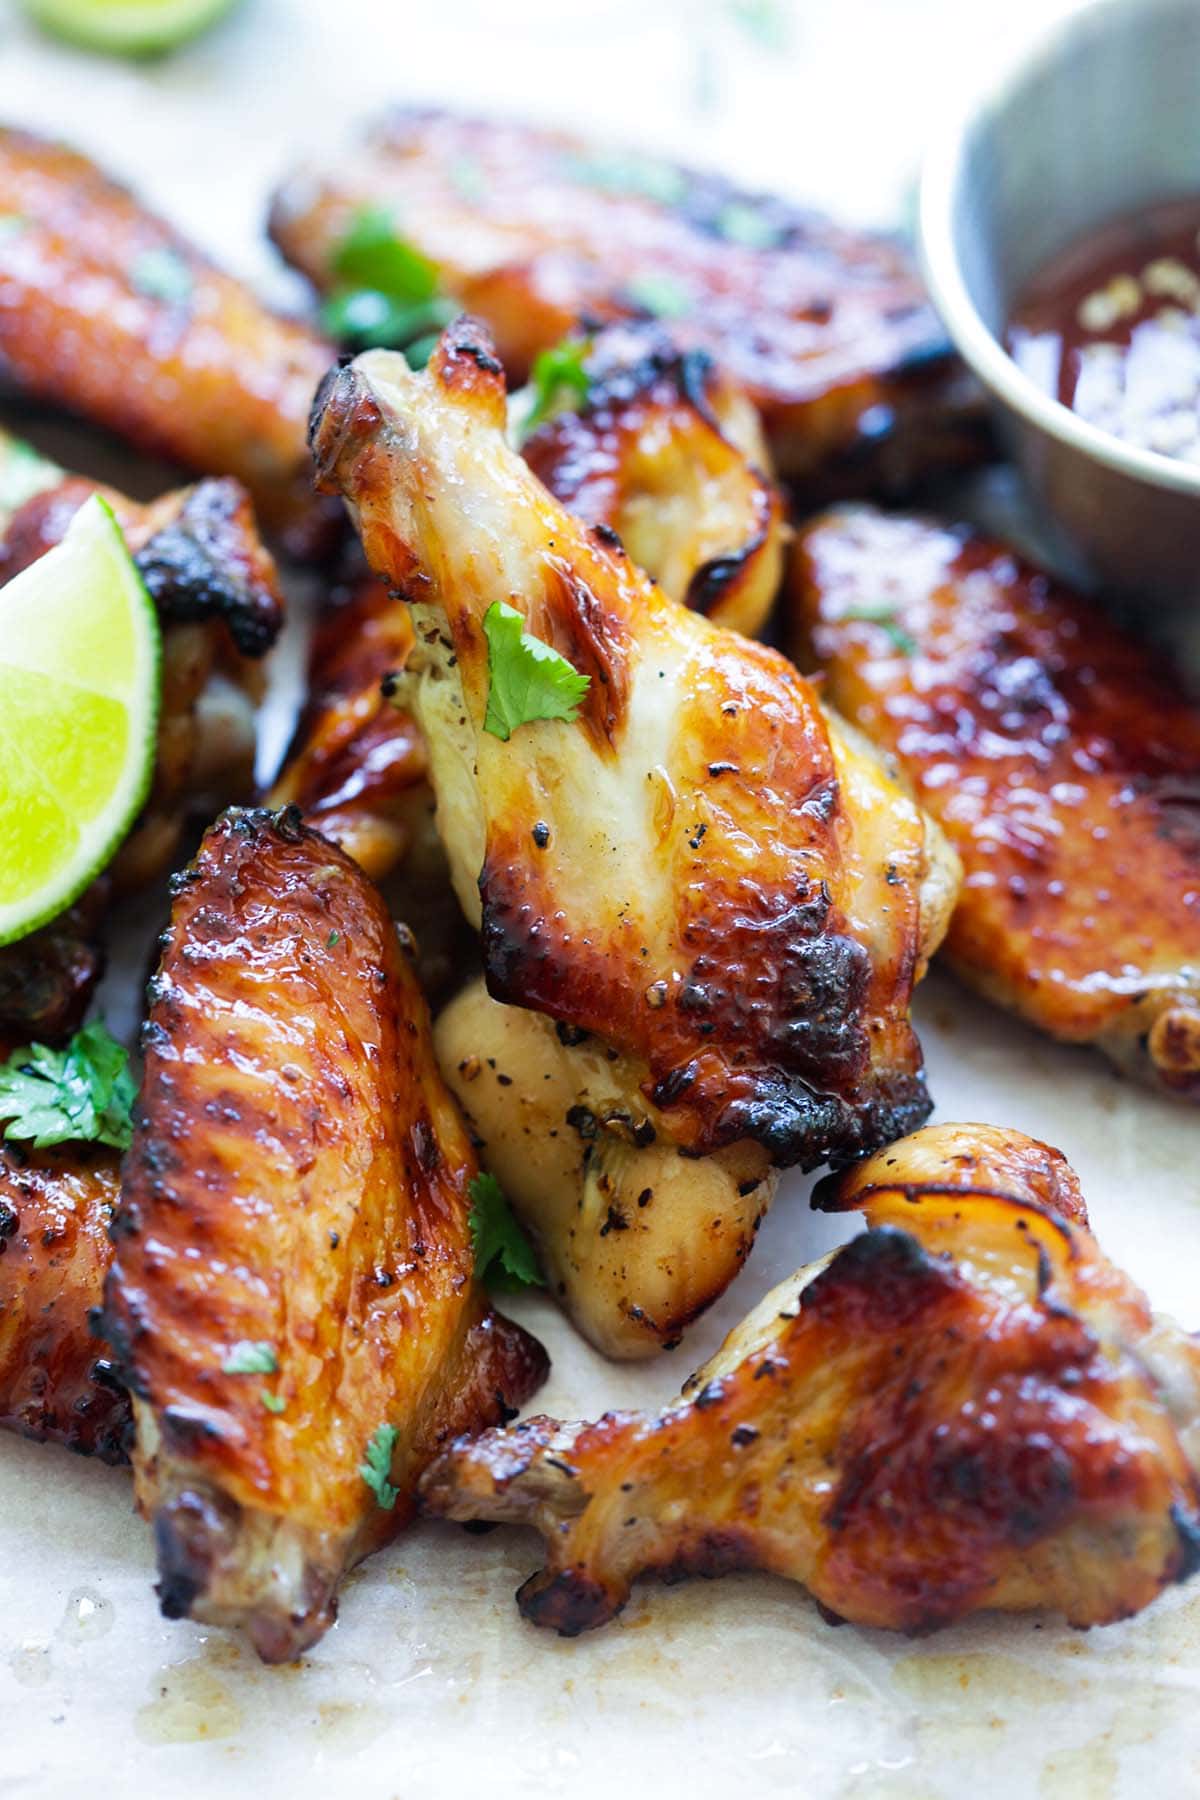 Easy BBQ chicken wings with sweet Thai seasonings.